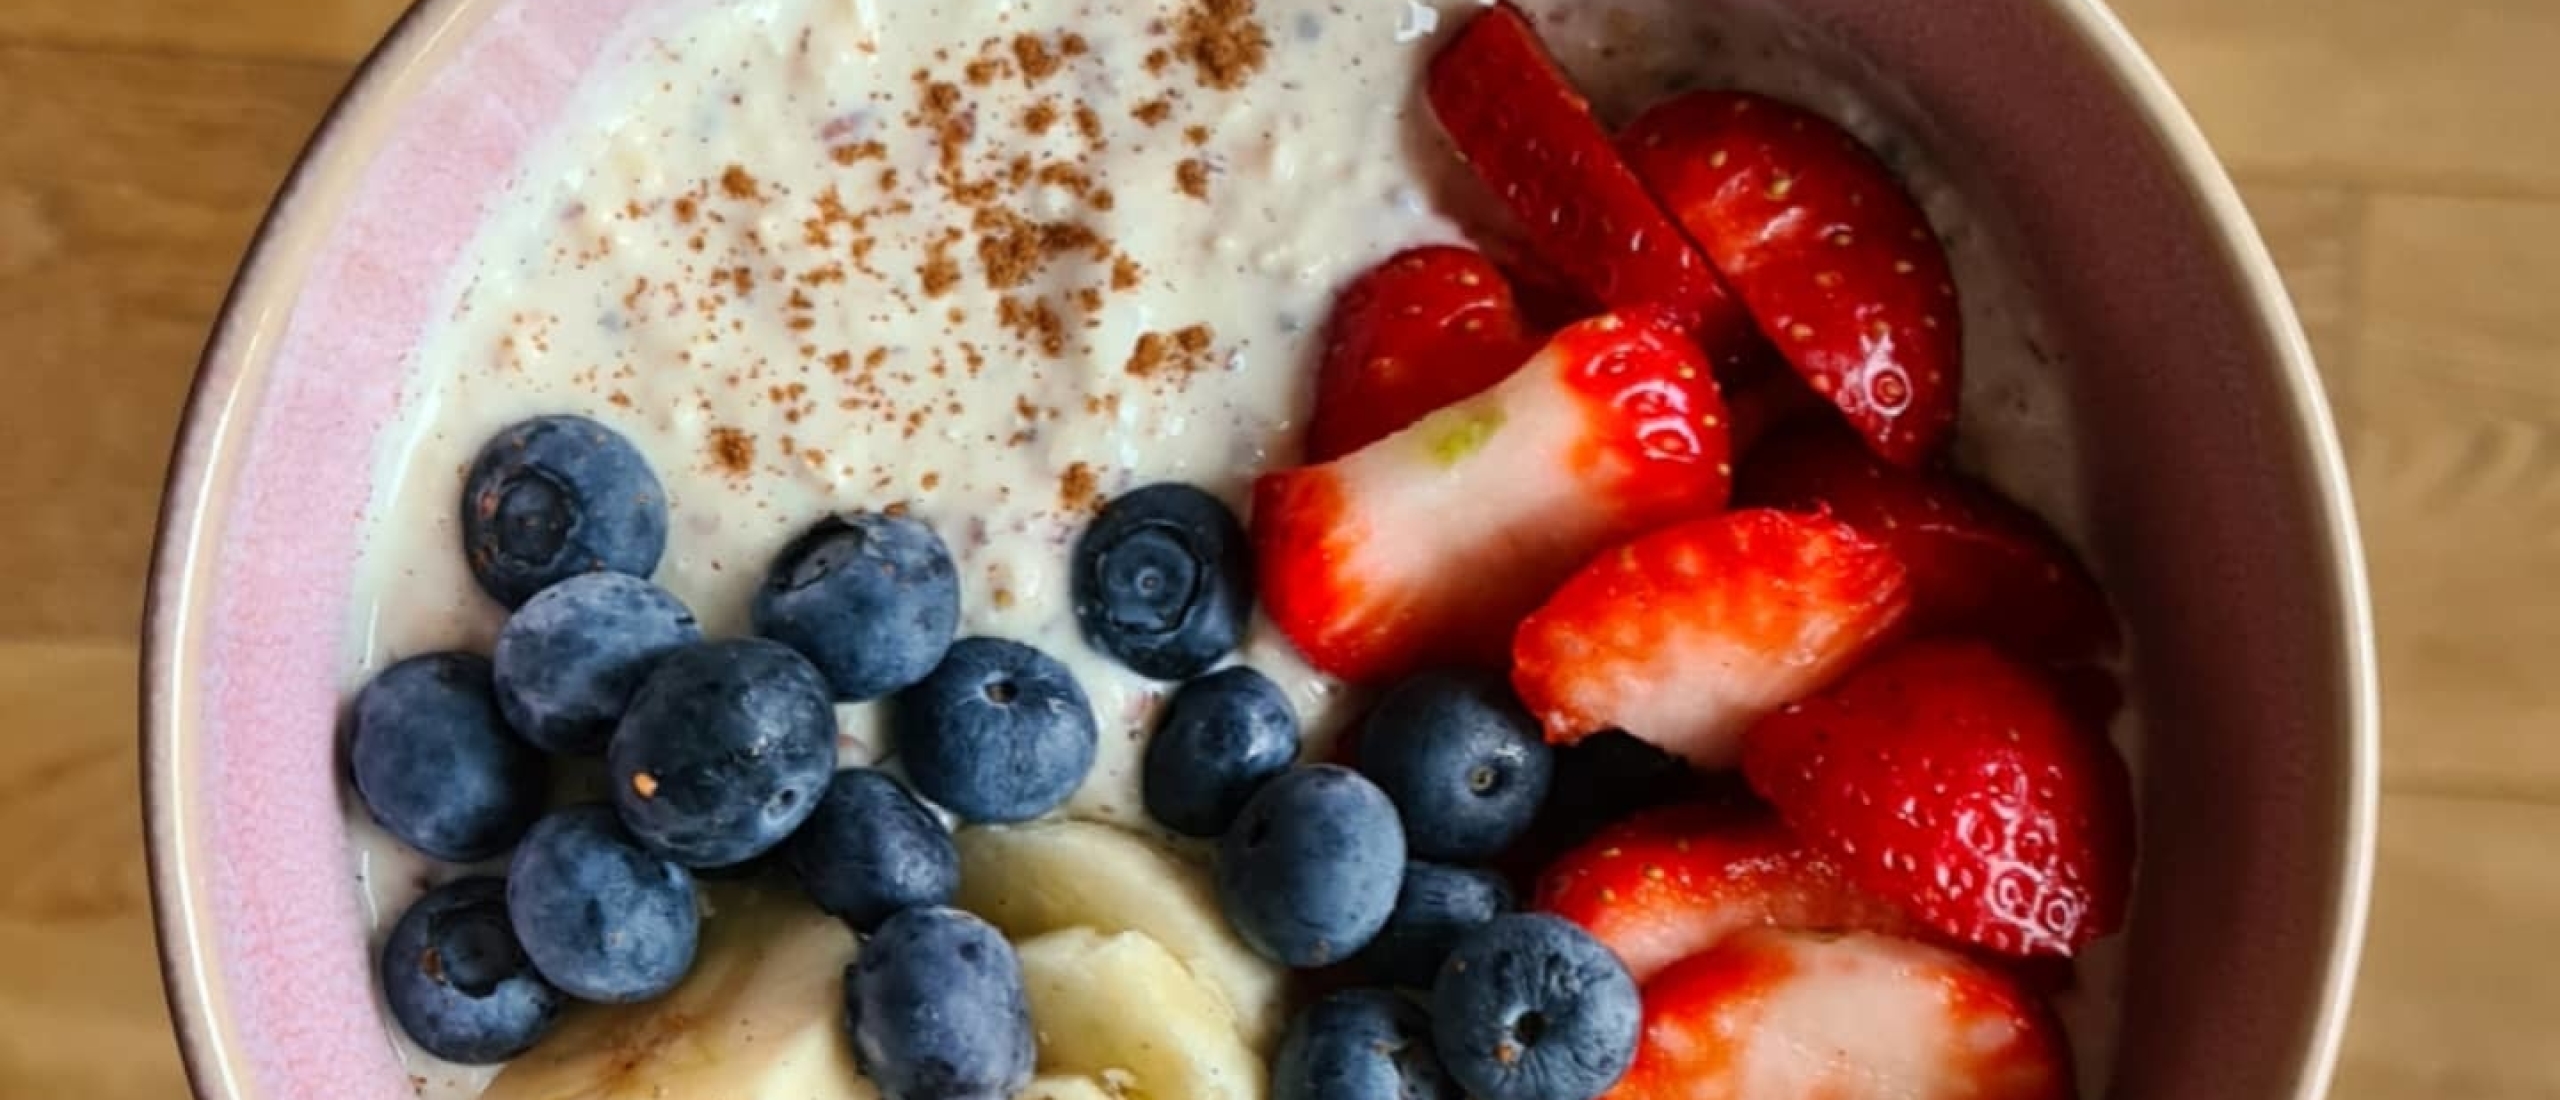 Deze vegan overnight oats wil jij iedere dag als ontbijt